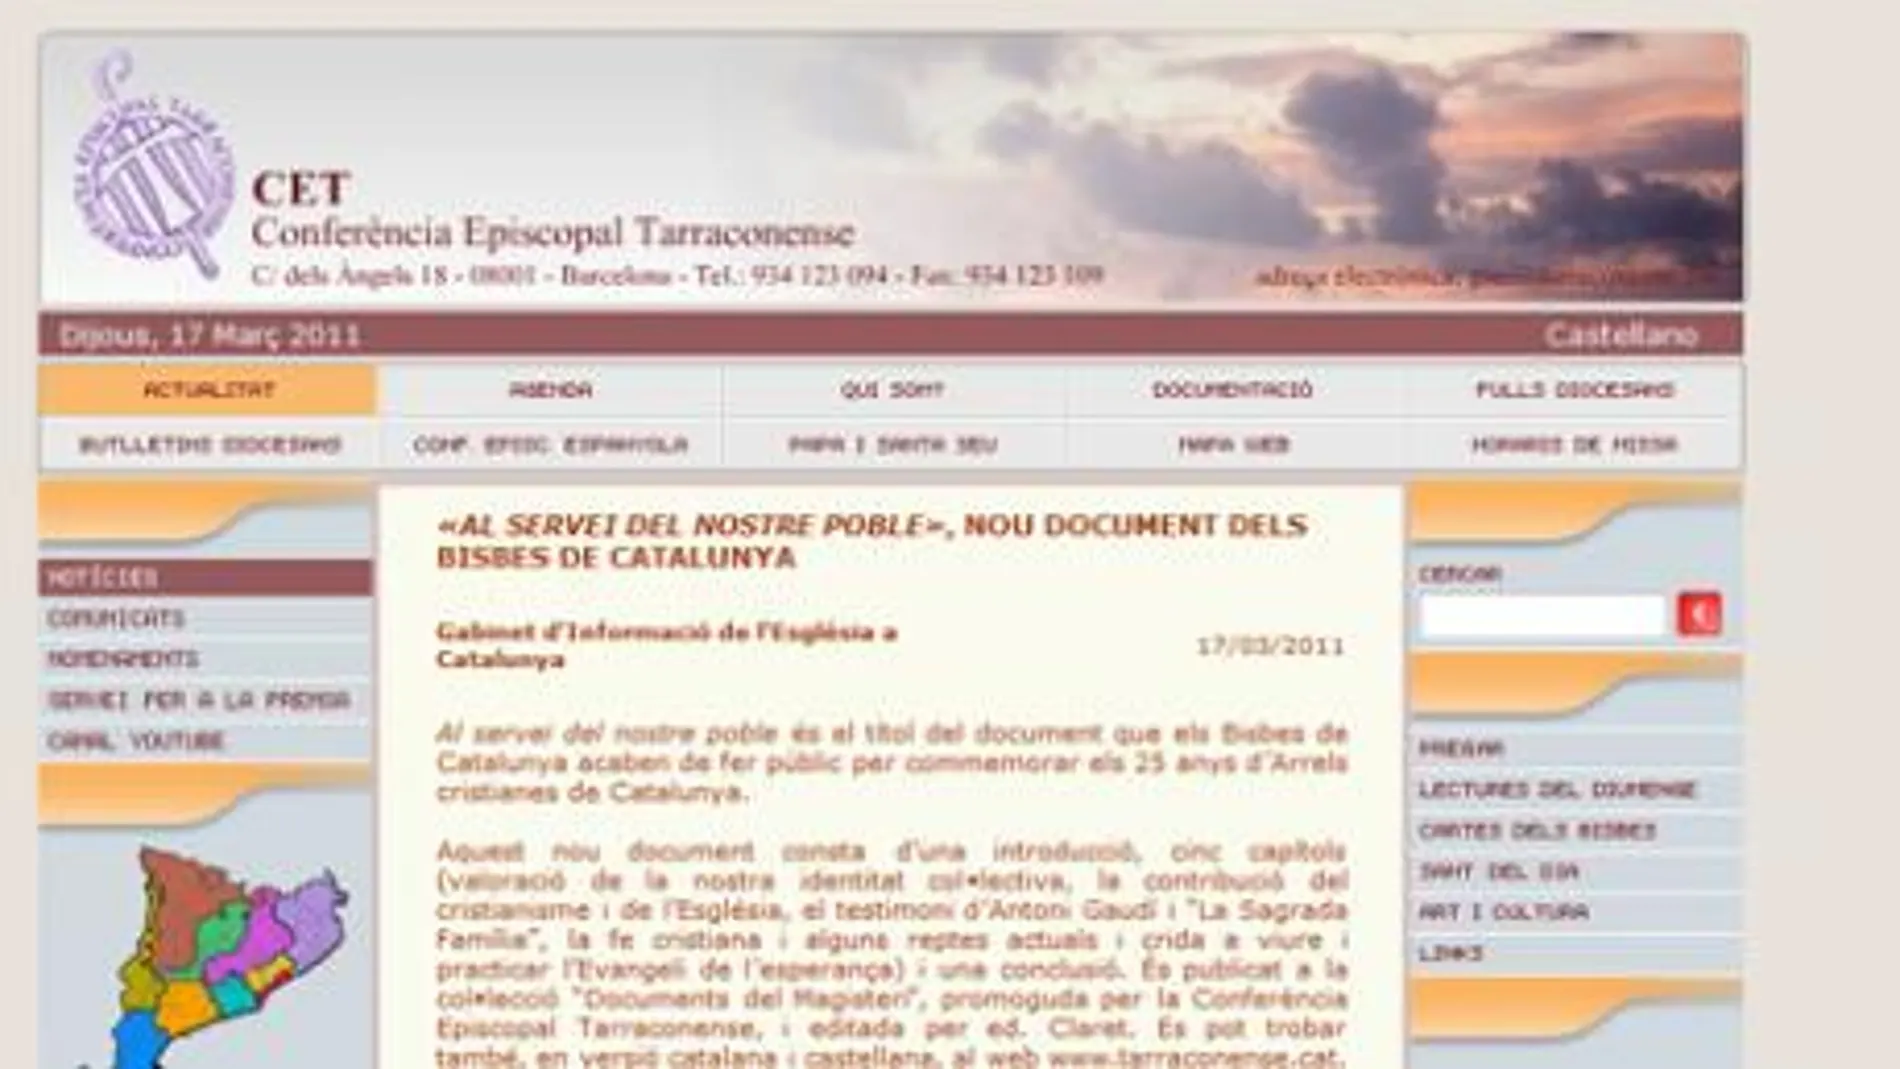 Documento publicado el página web de la Conferencia Episcopal tarraconense